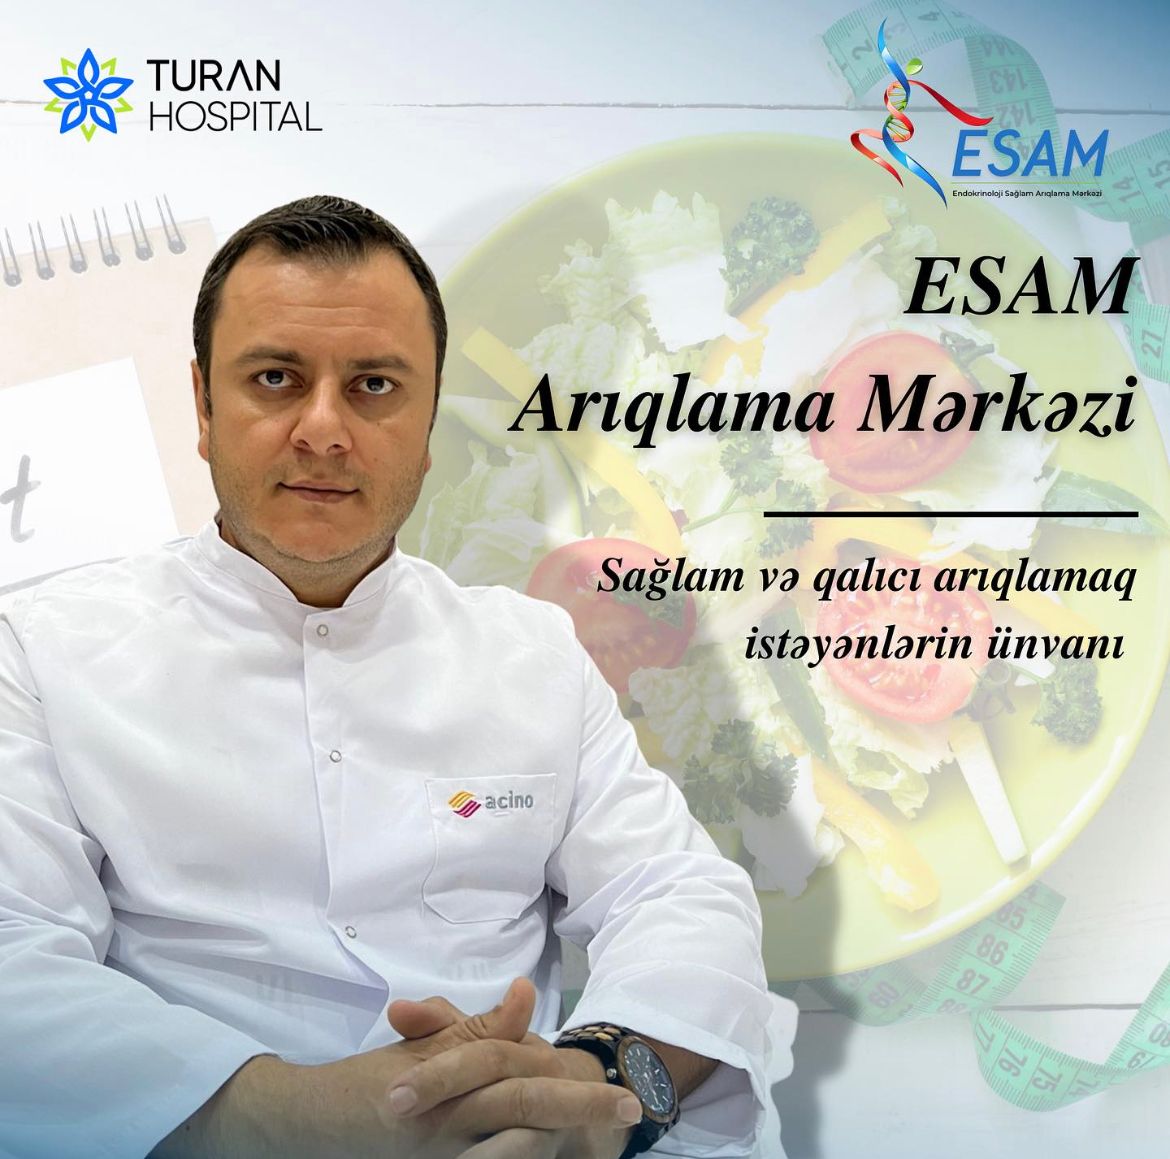 ESAM (Endokrin Sağlam Arıqlama Mərkəzi) Turan Hospitalın nəznində fəaliyyət göstərir.